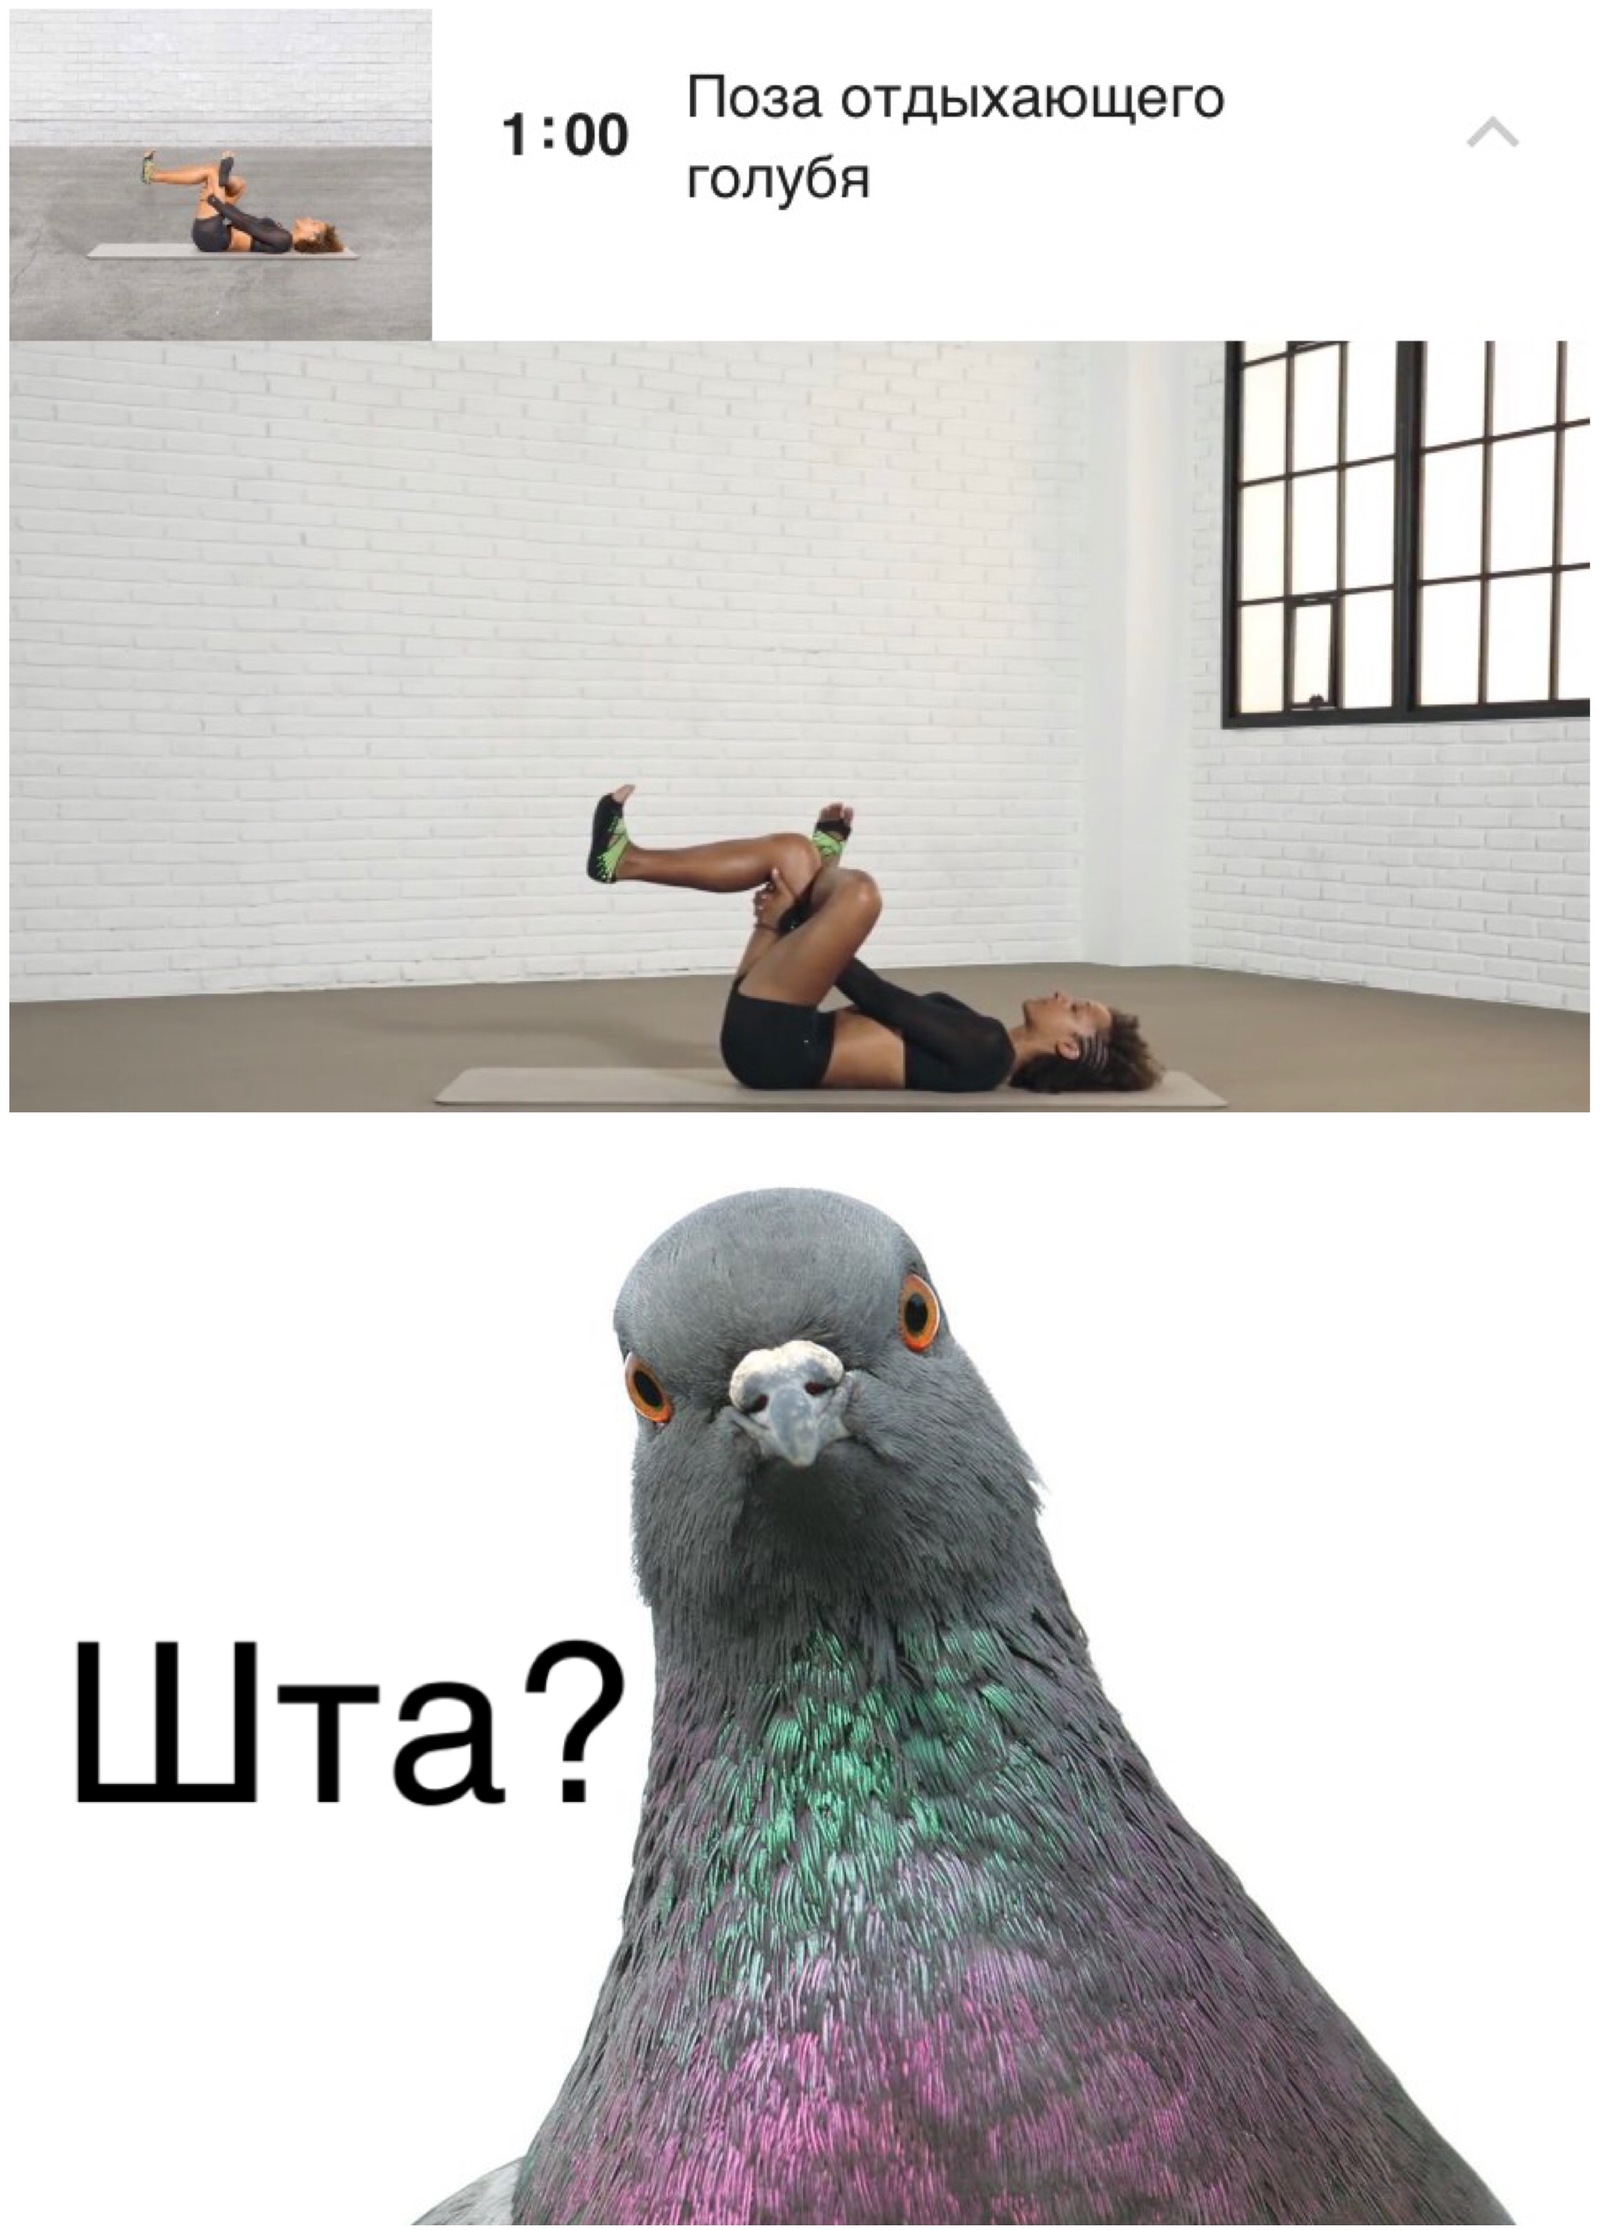 Мемы с голубями